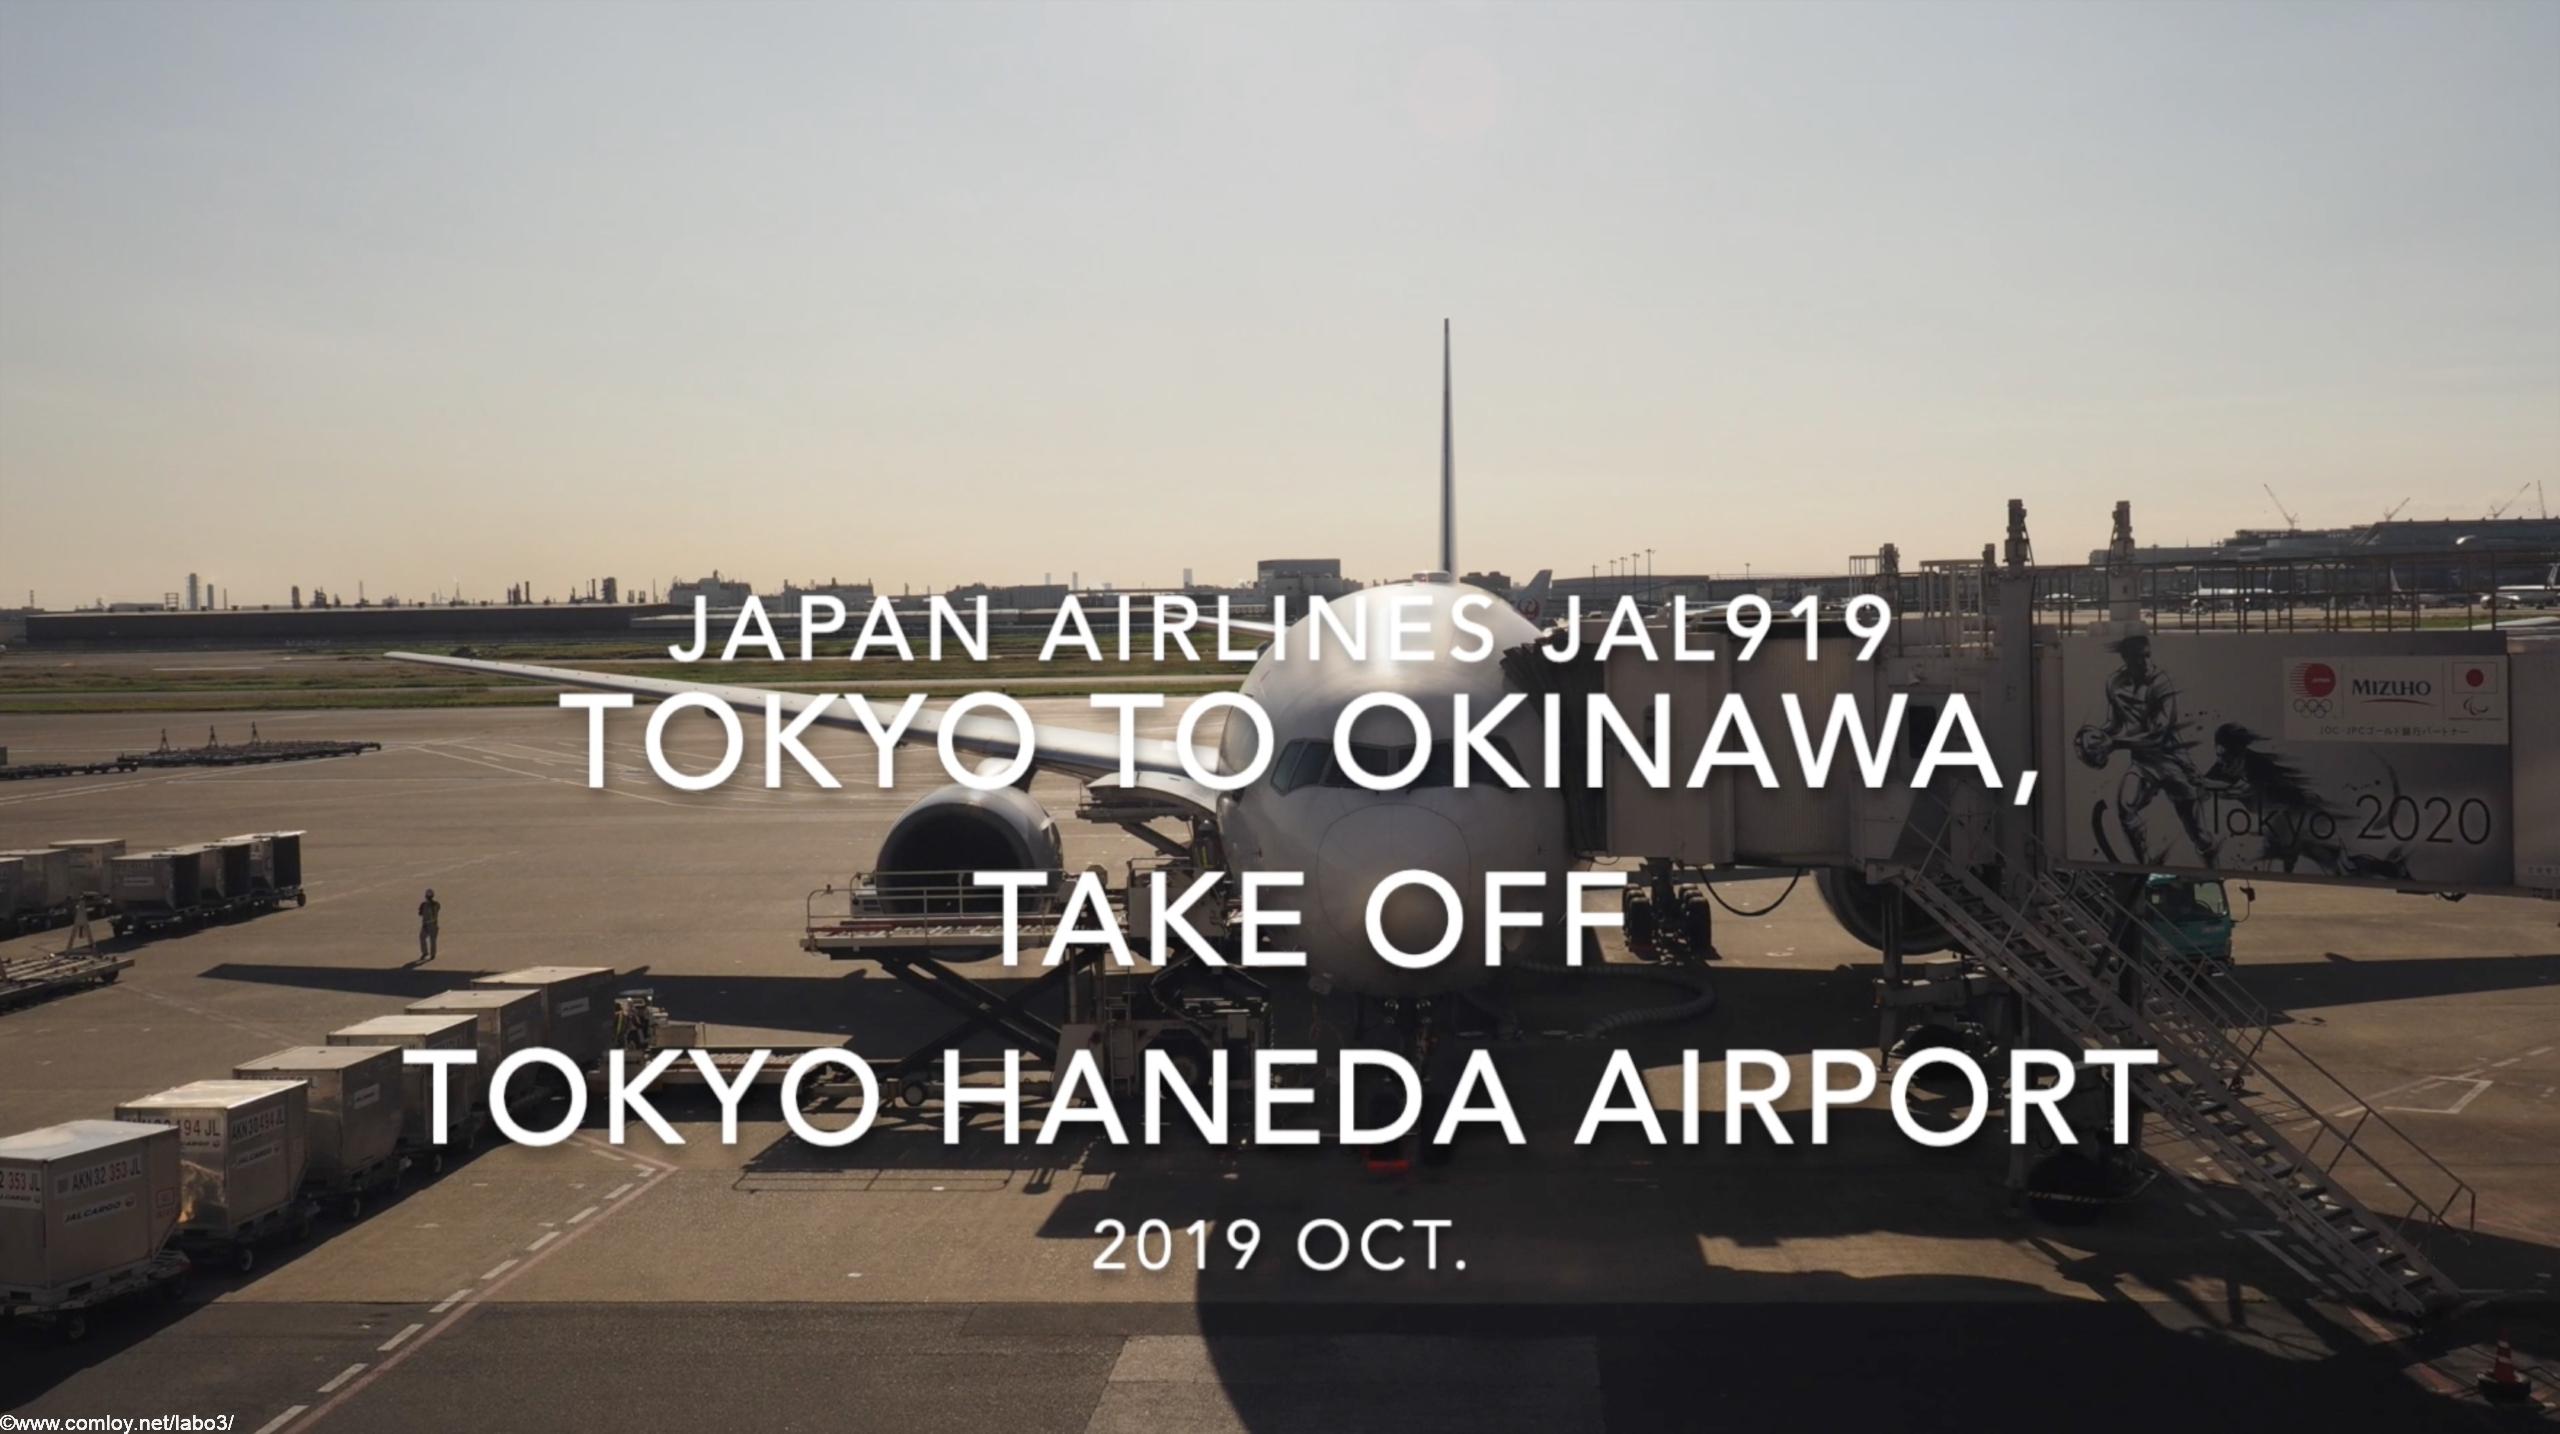 【機内から離着陸映像】2019 Oct Japan airlines JAL919 TOKYO HANEDA to OKINAWA NAHA, Take off TOKYO HANEDA Airport